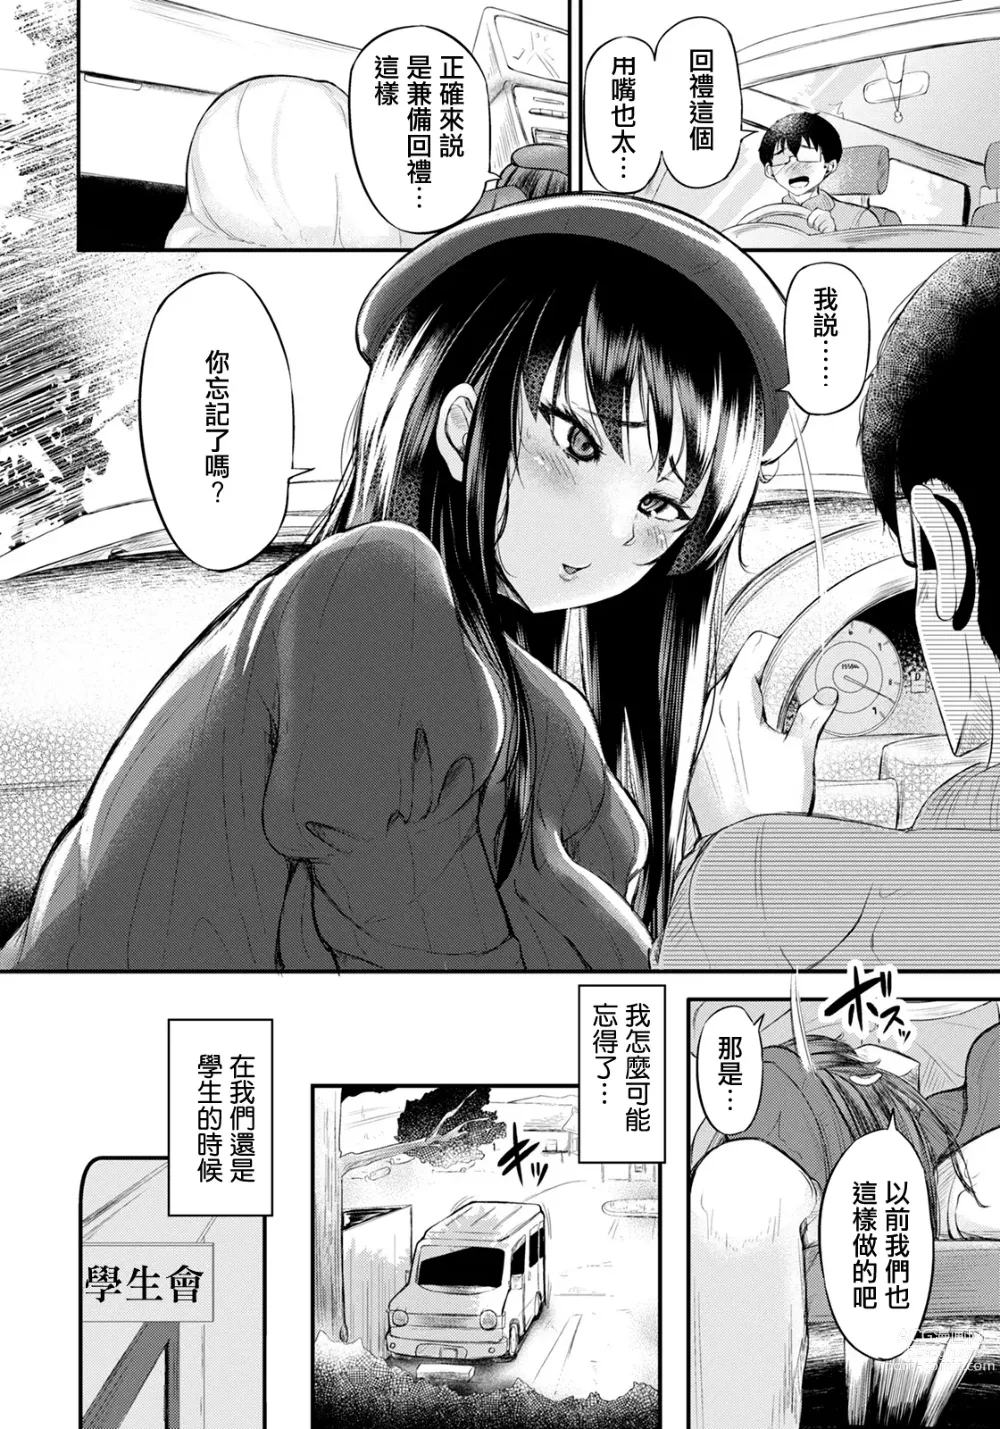 Page 2 of manga Shachu Haku